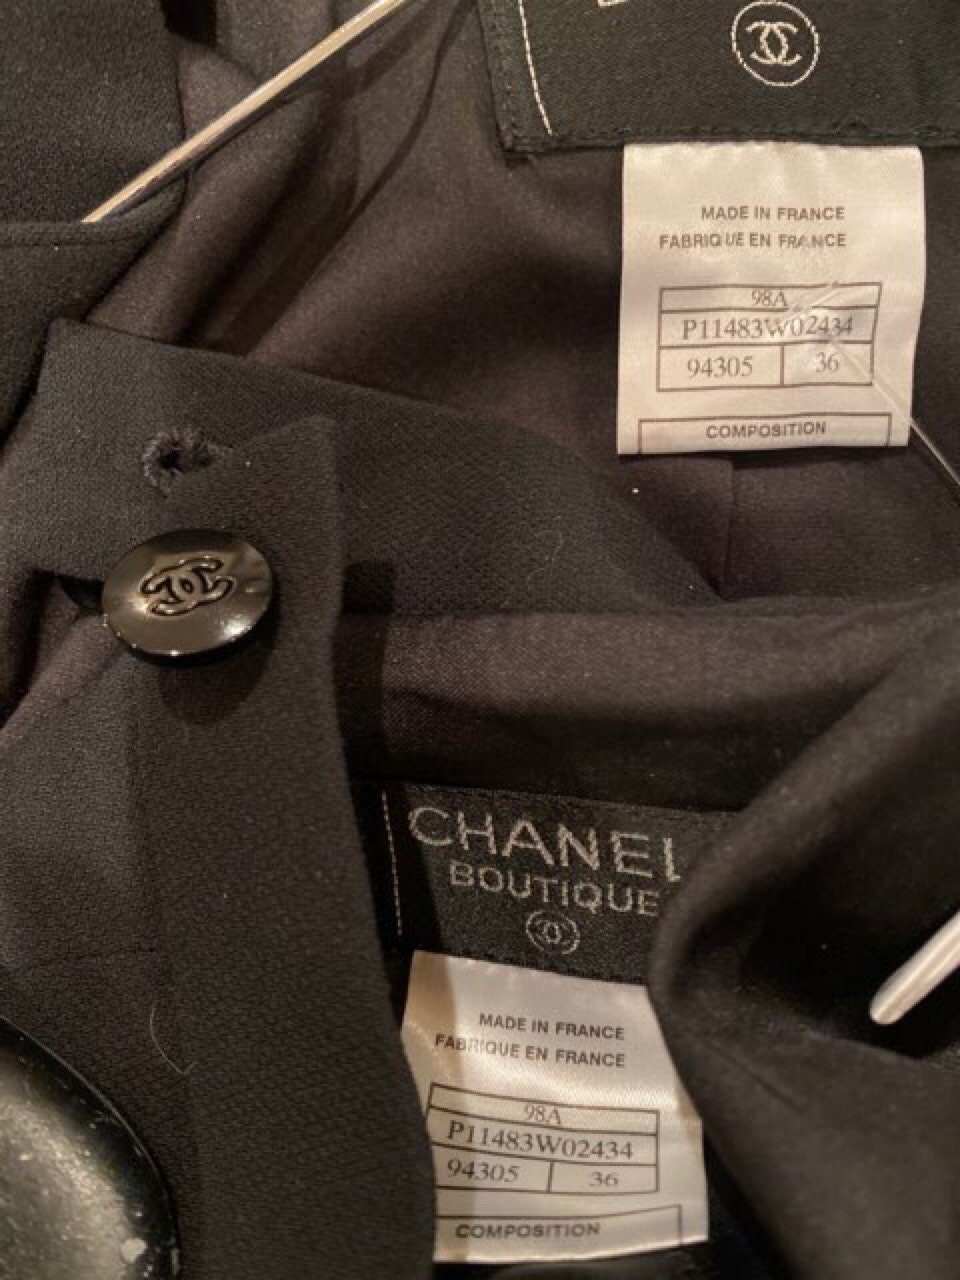 HelensChanel 98A 1998 Fall Nwot Vintage Chanel Black Skirt Suit FR 38